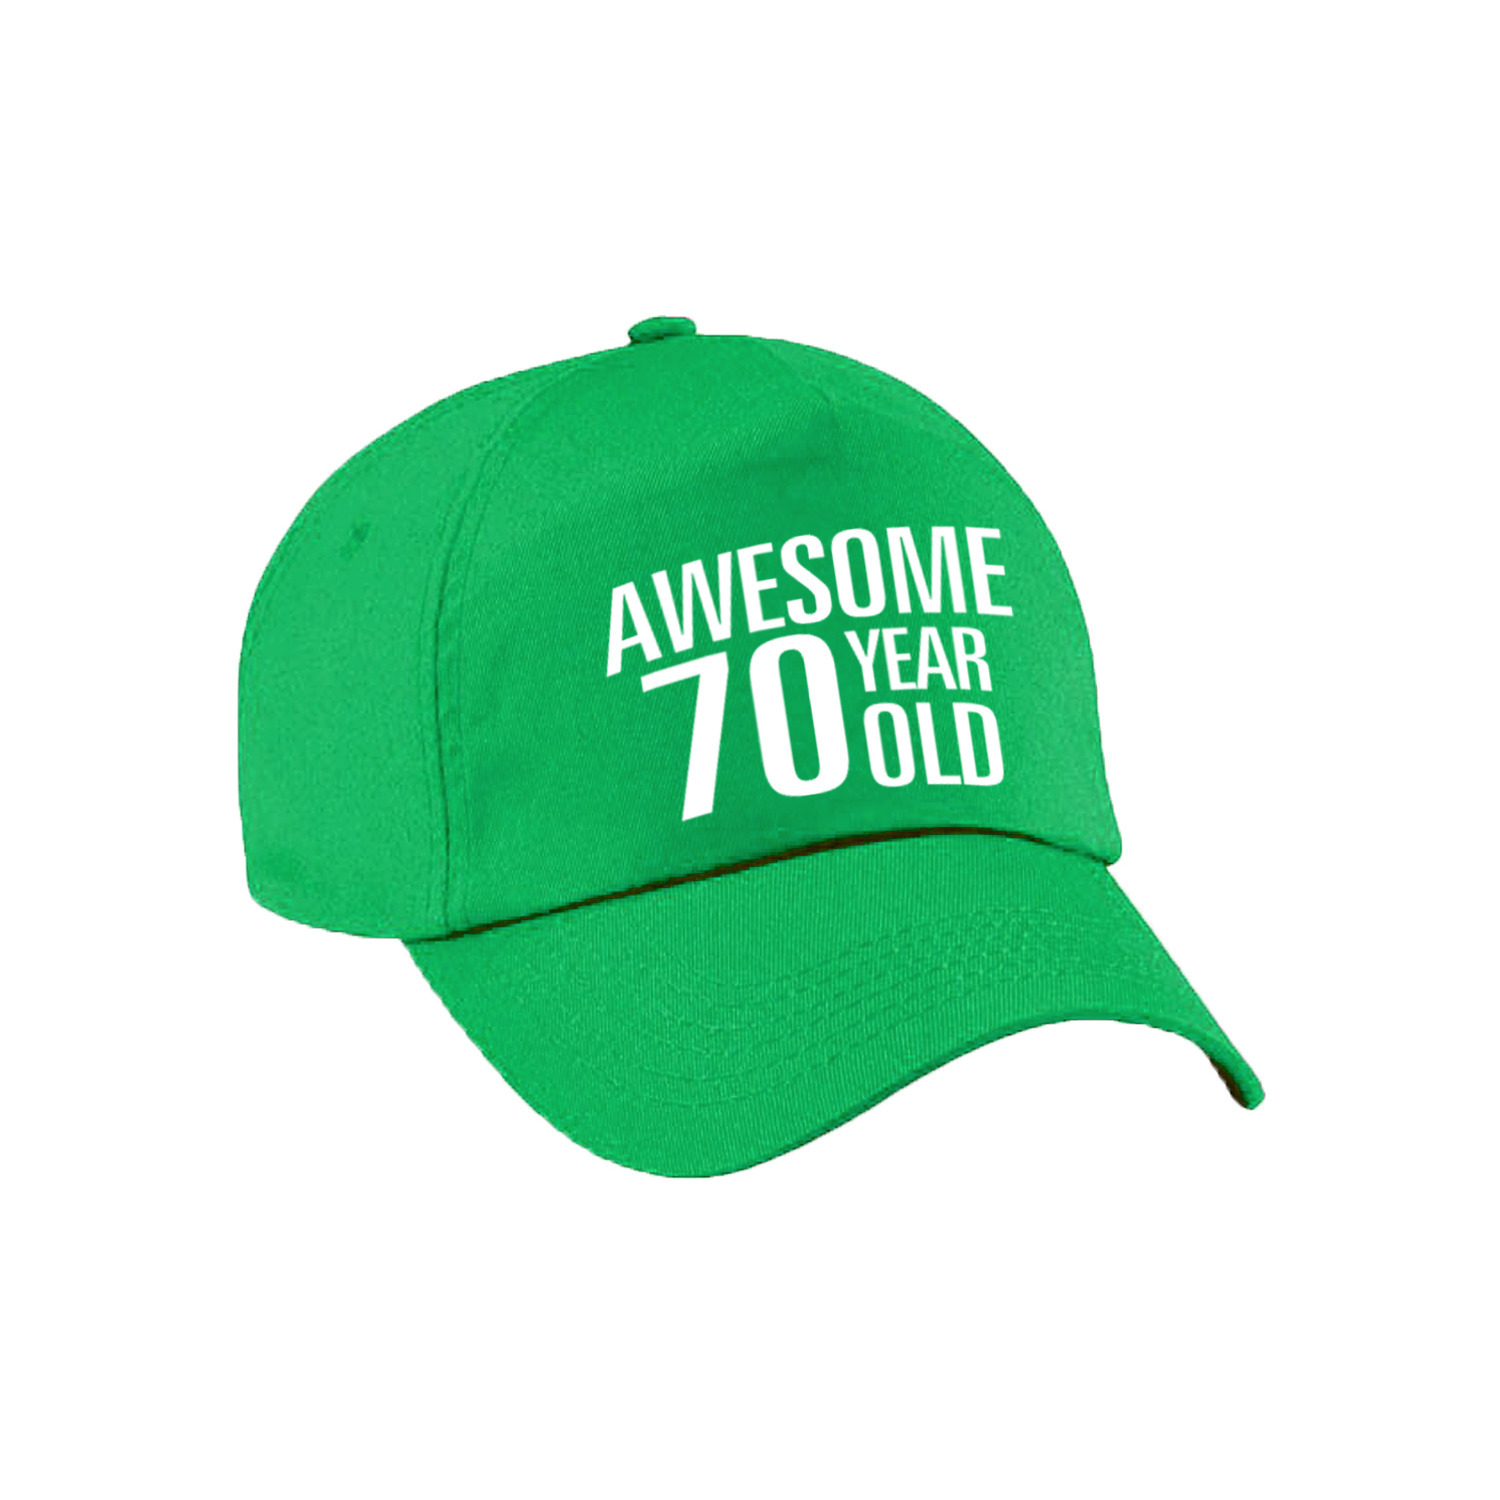 Awesome 70 year old verjaardag pet-cap groen voor dames en heren